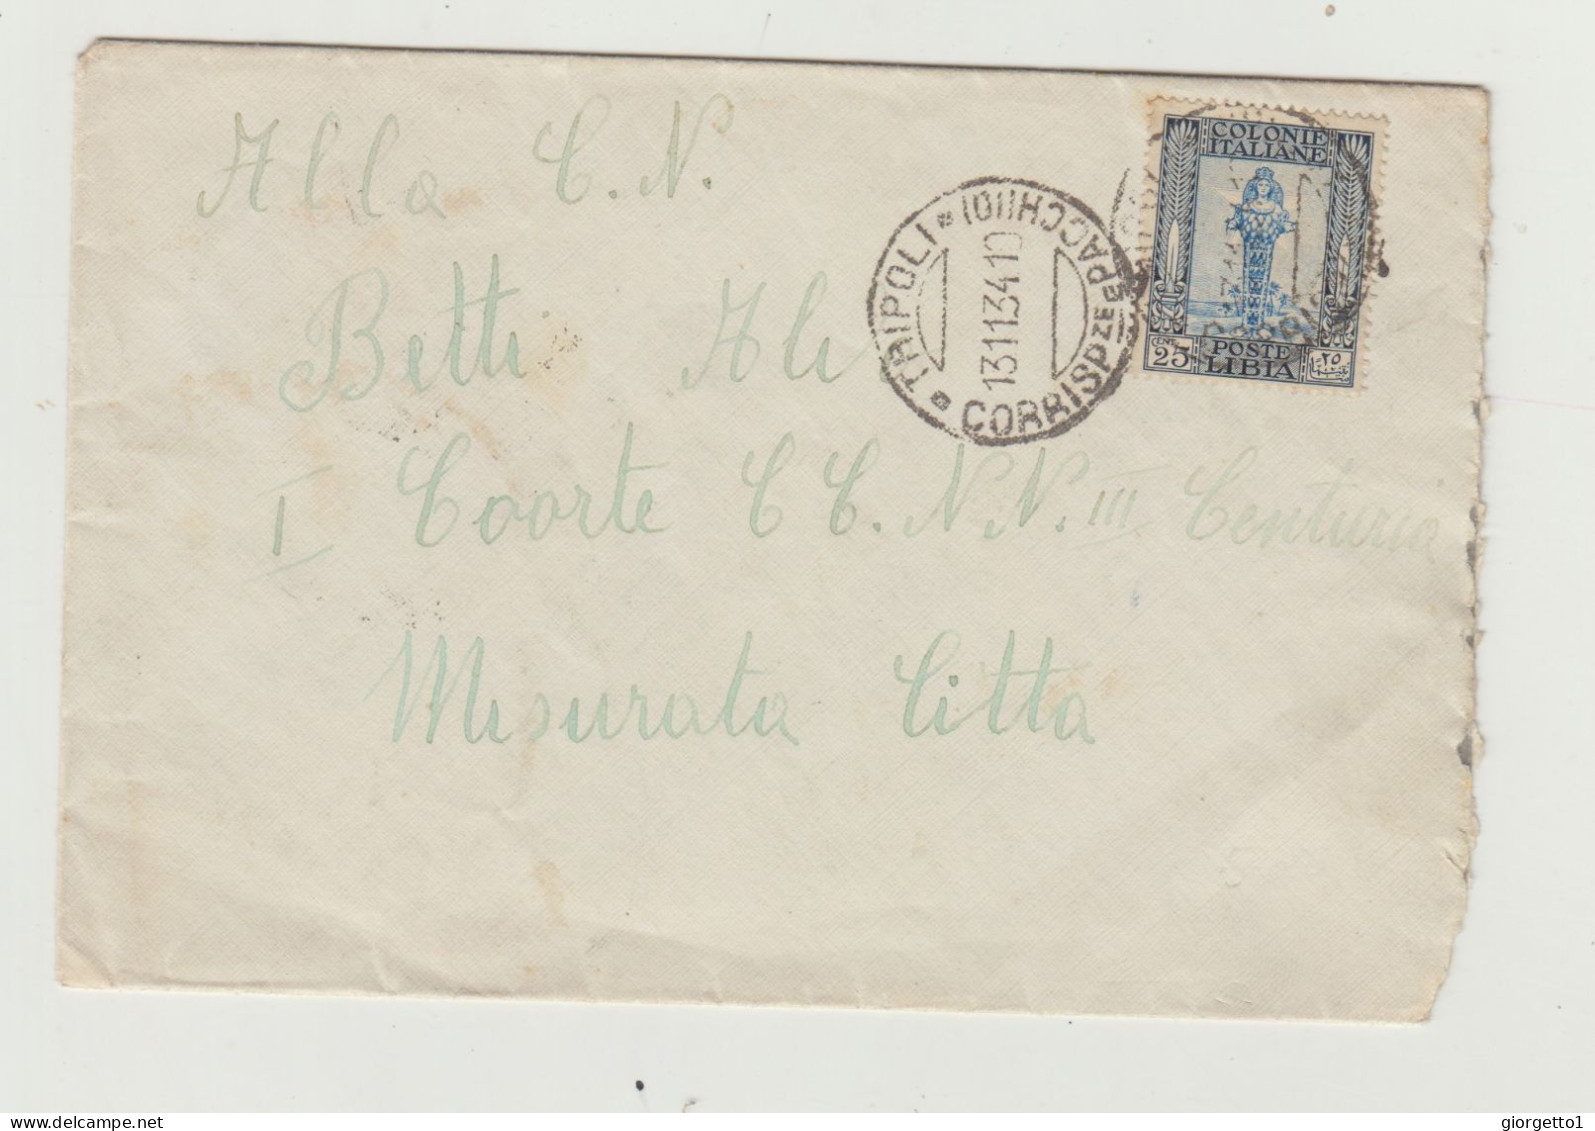 BUSTA SENZA LETTERA - COLONIE ITALIANE - LIBIA DEL 1934 - 1 LEGIONE LIBICA WW2 - Marcophilie (Avions)